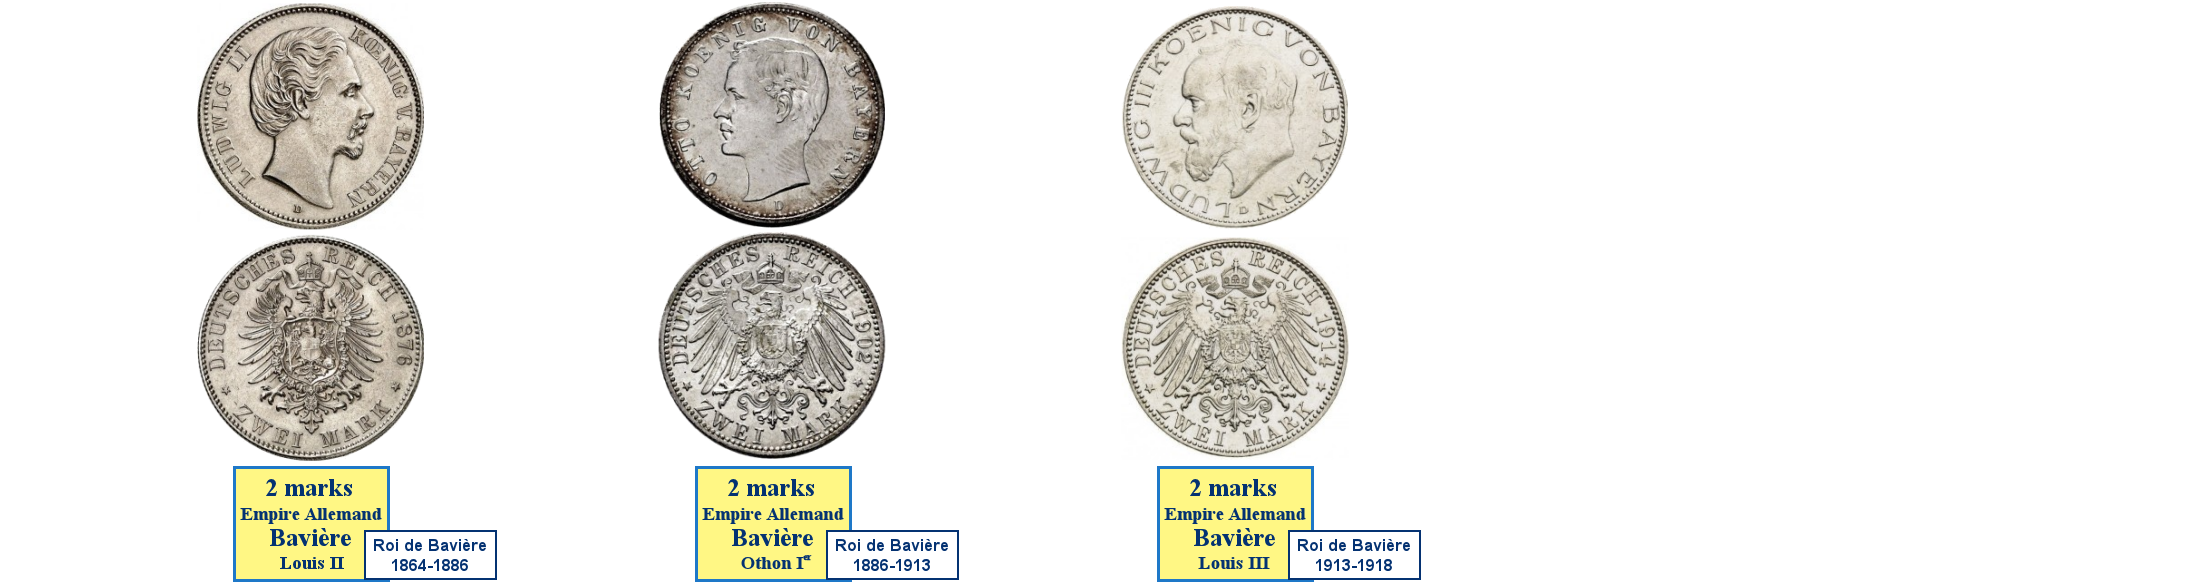 Photos de pièces de monnaies du Royaume de Bavière dans l'Empire Allemand